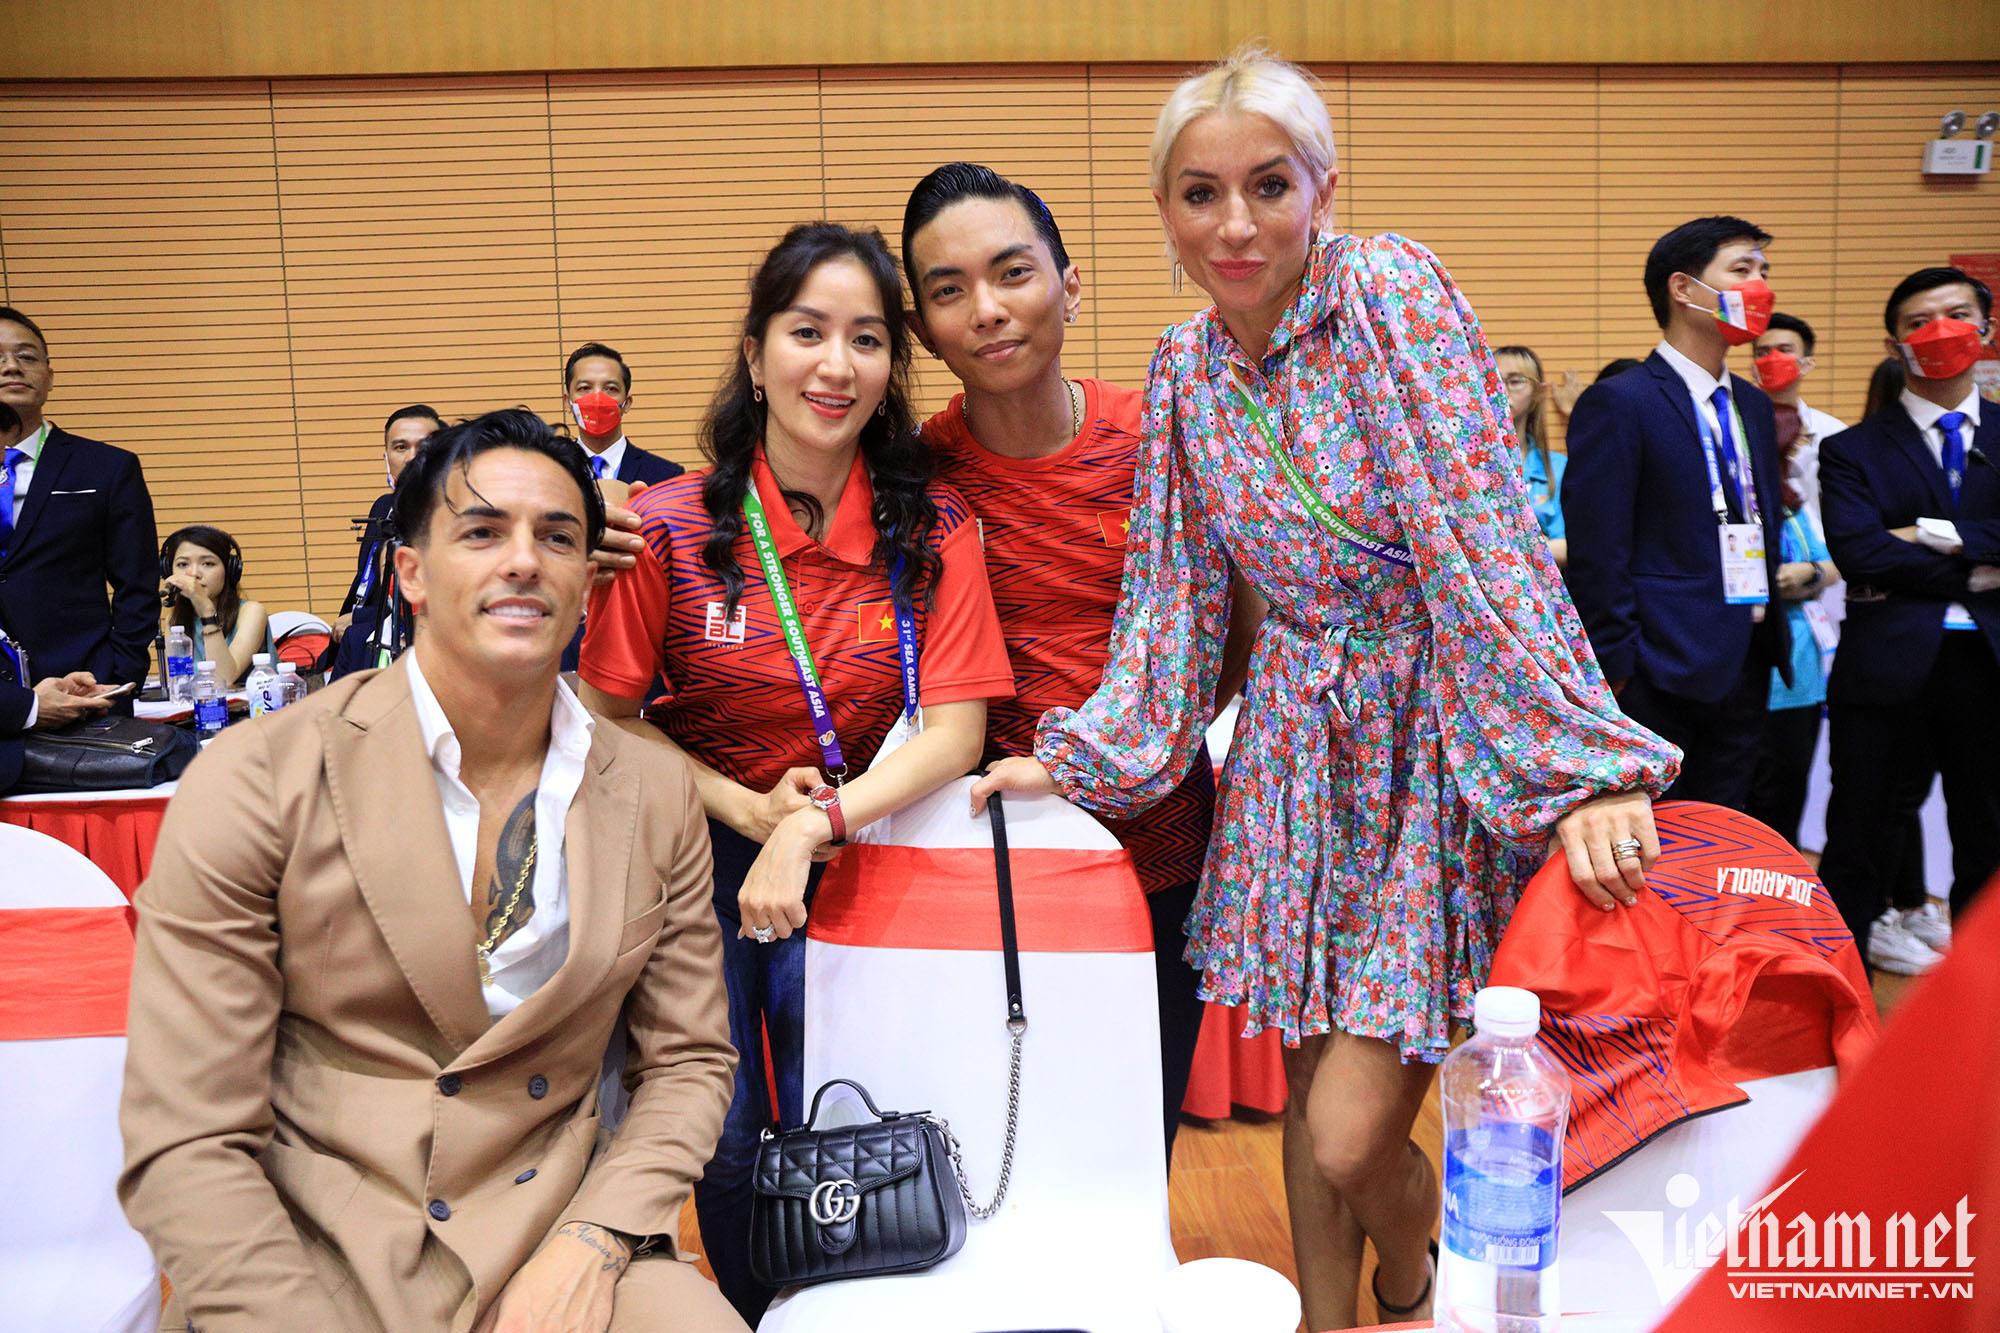  Vợ chồng Khánh Thi bên các nghệ sĩ quốc tế.